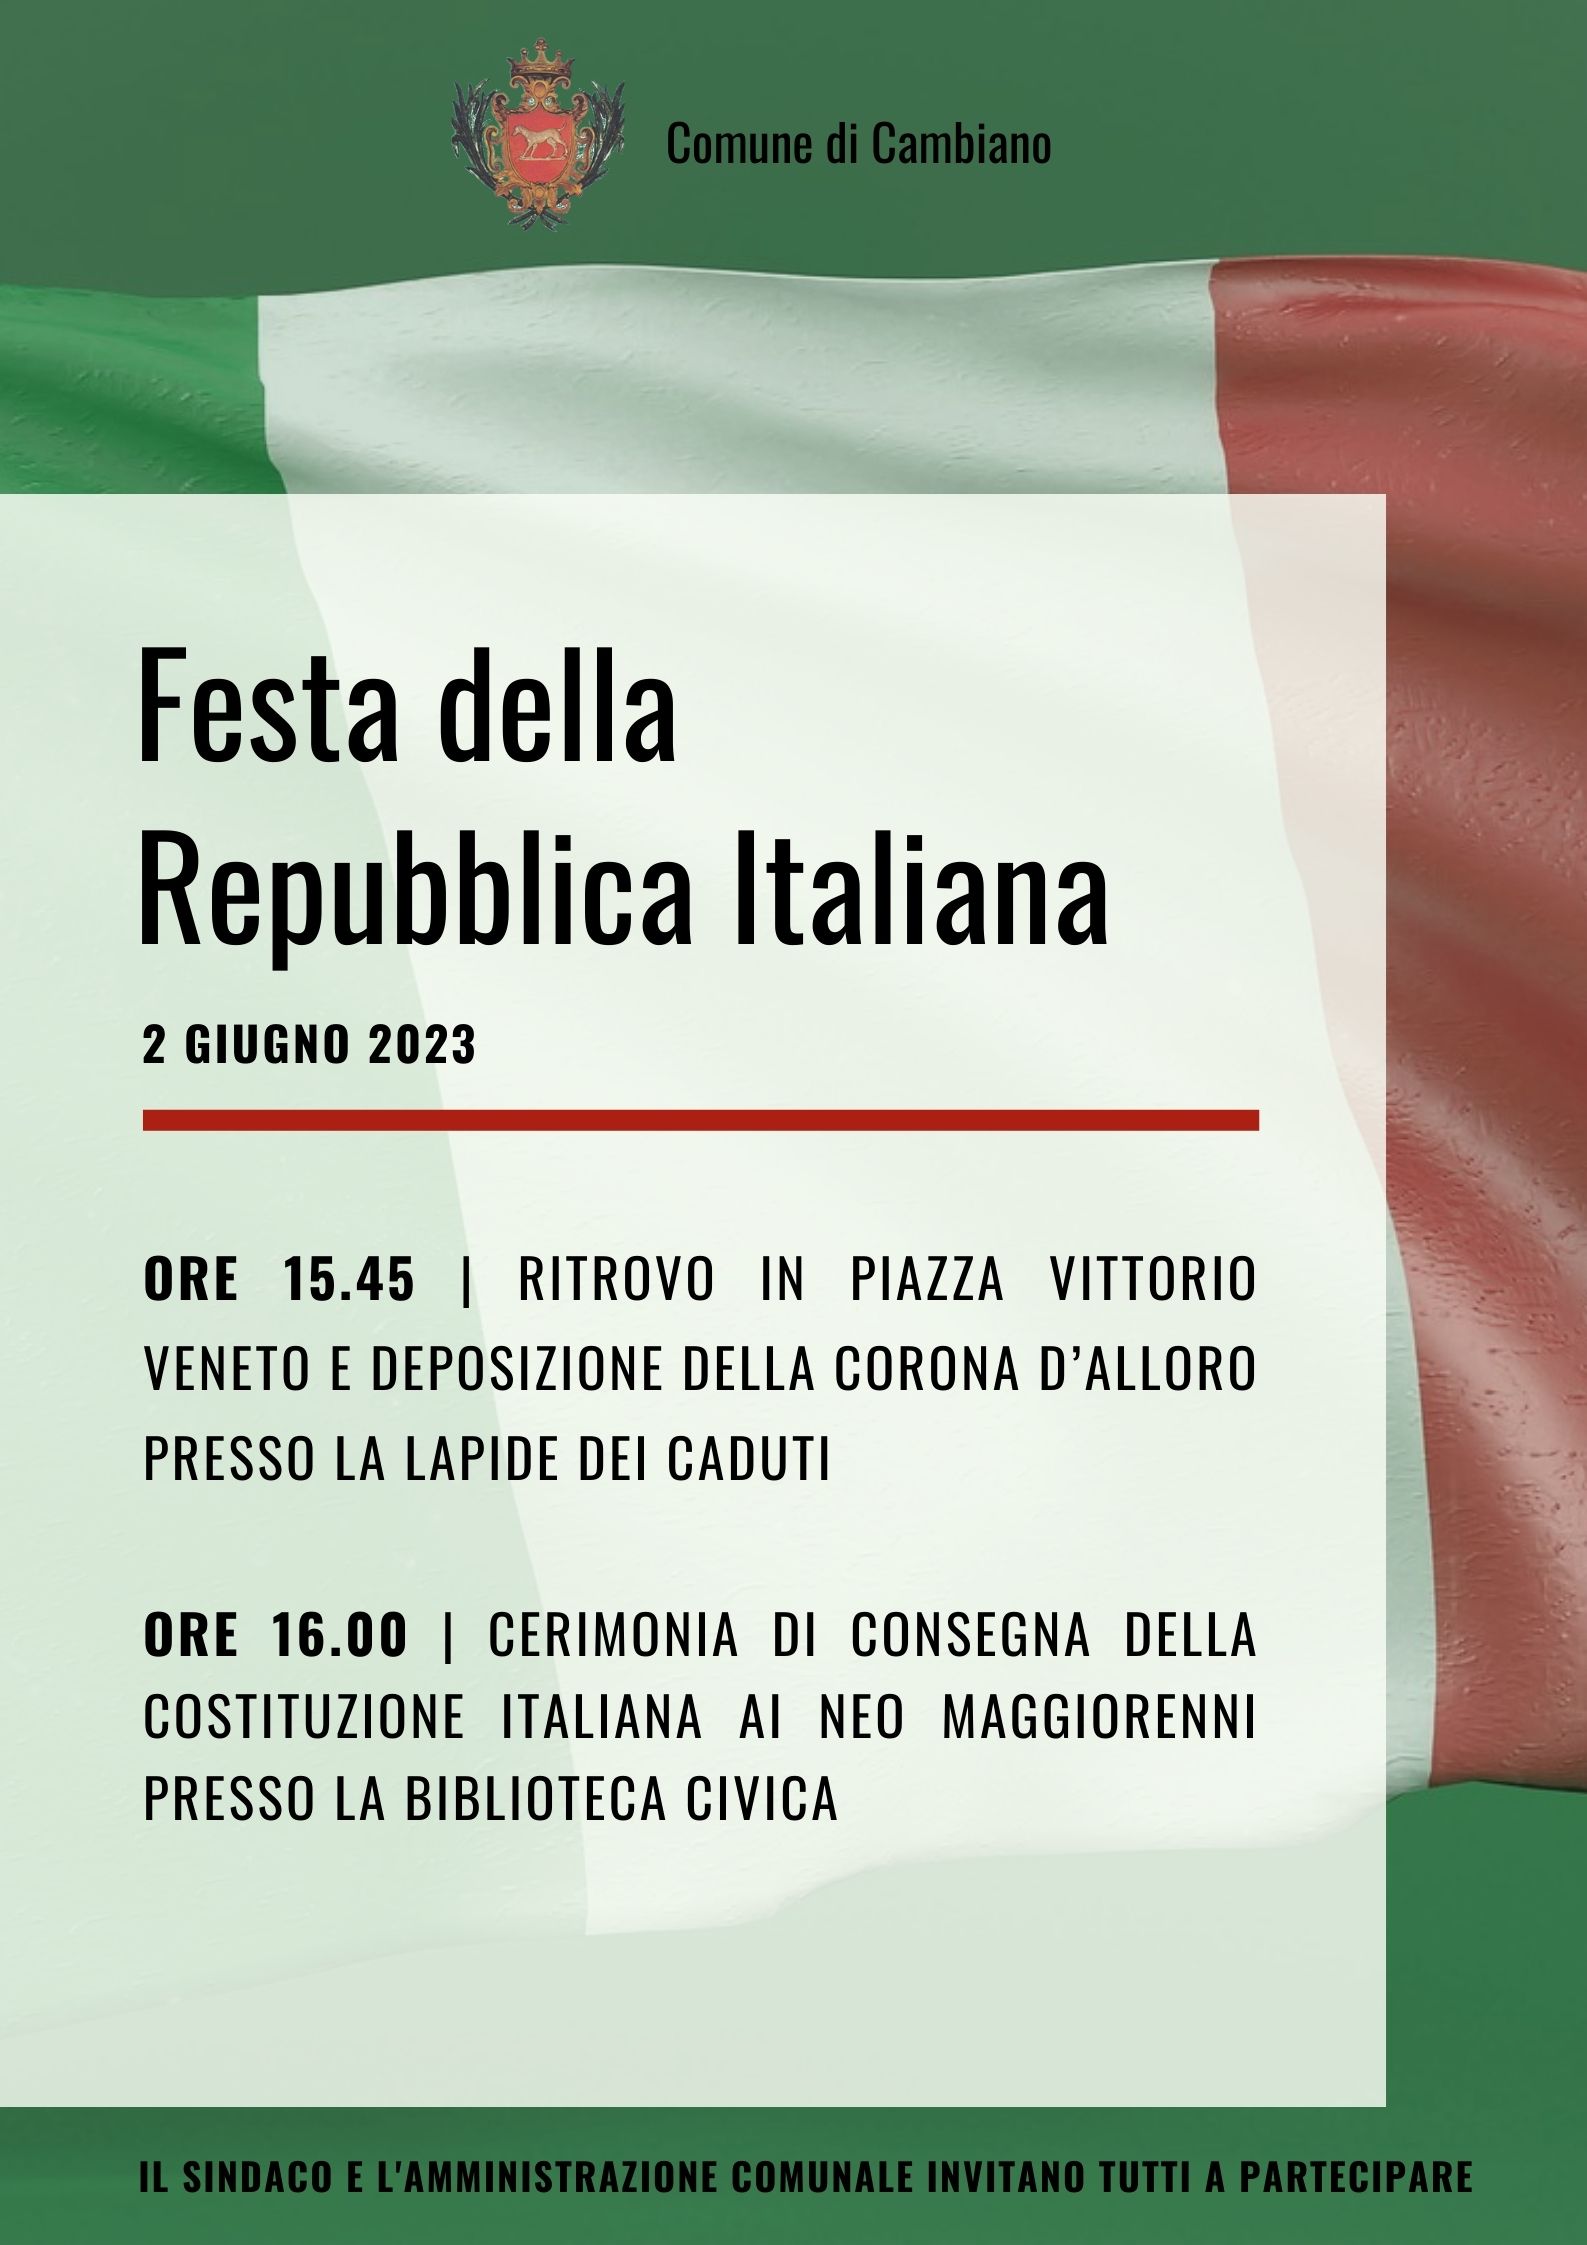 2 giugno 2023 - Festa della Repubblica Italiana